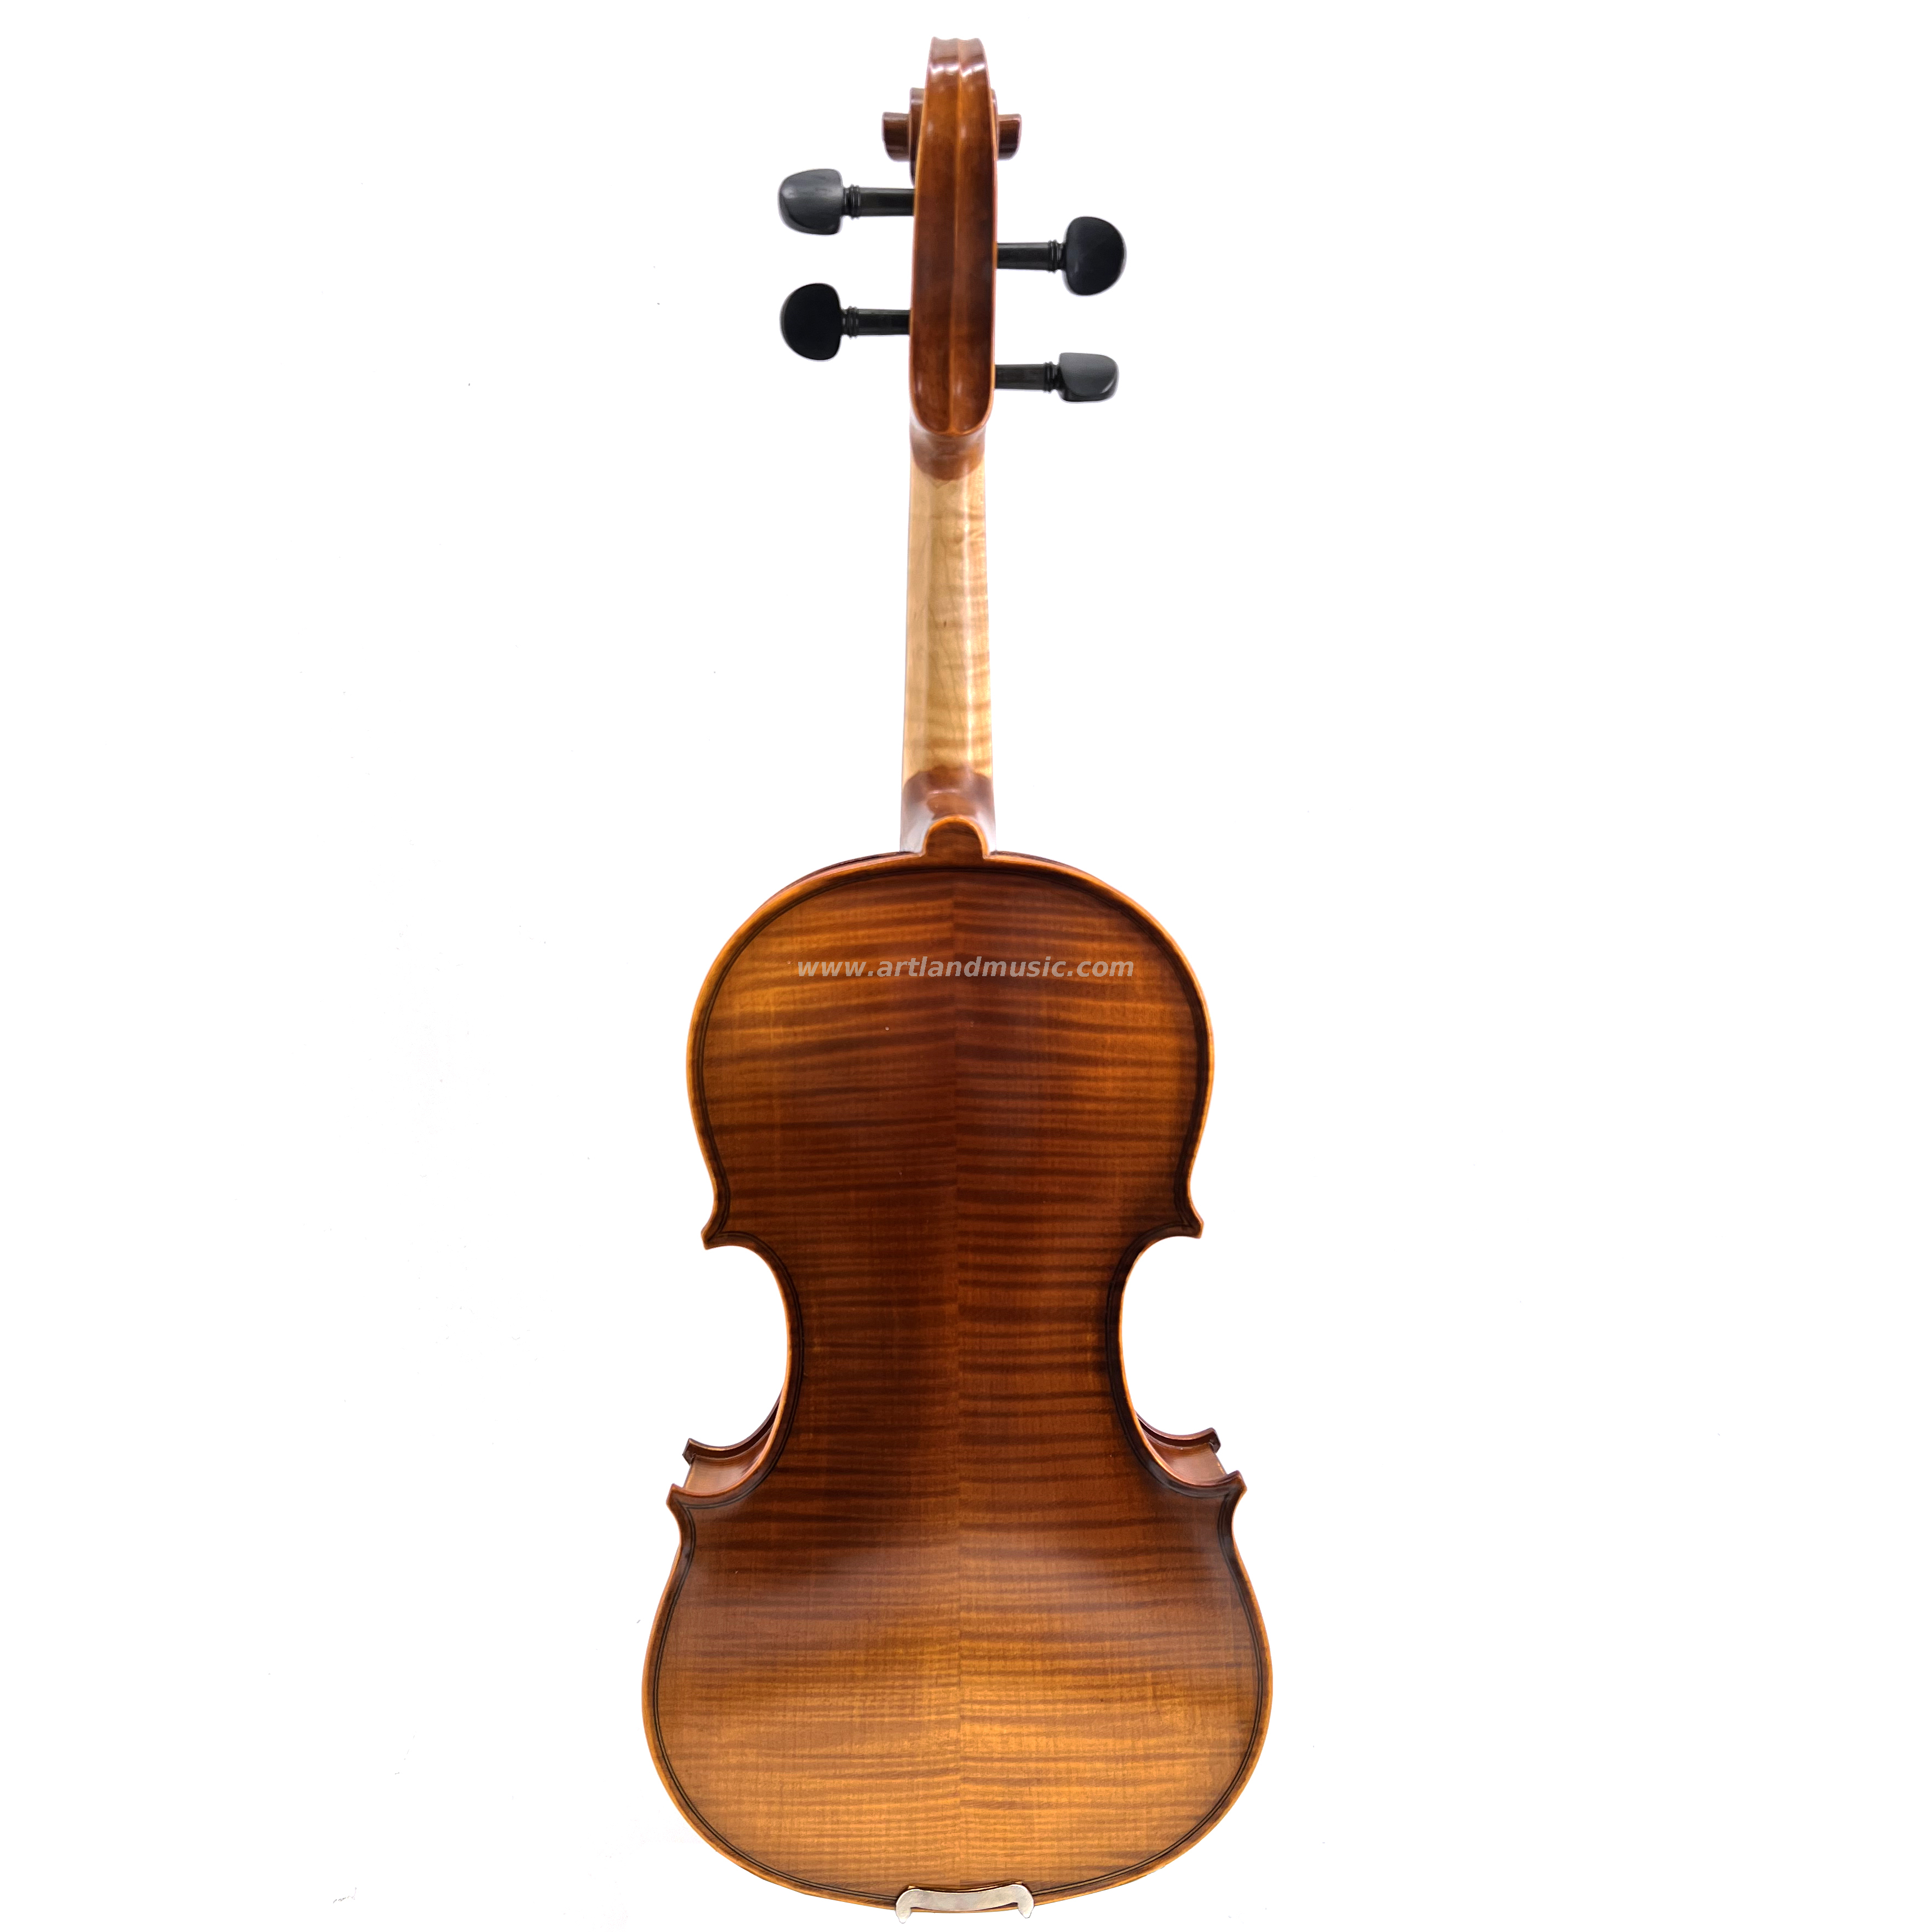 Buen violín moderado de llama con barniz manual y artesanía advocada (MV150H)